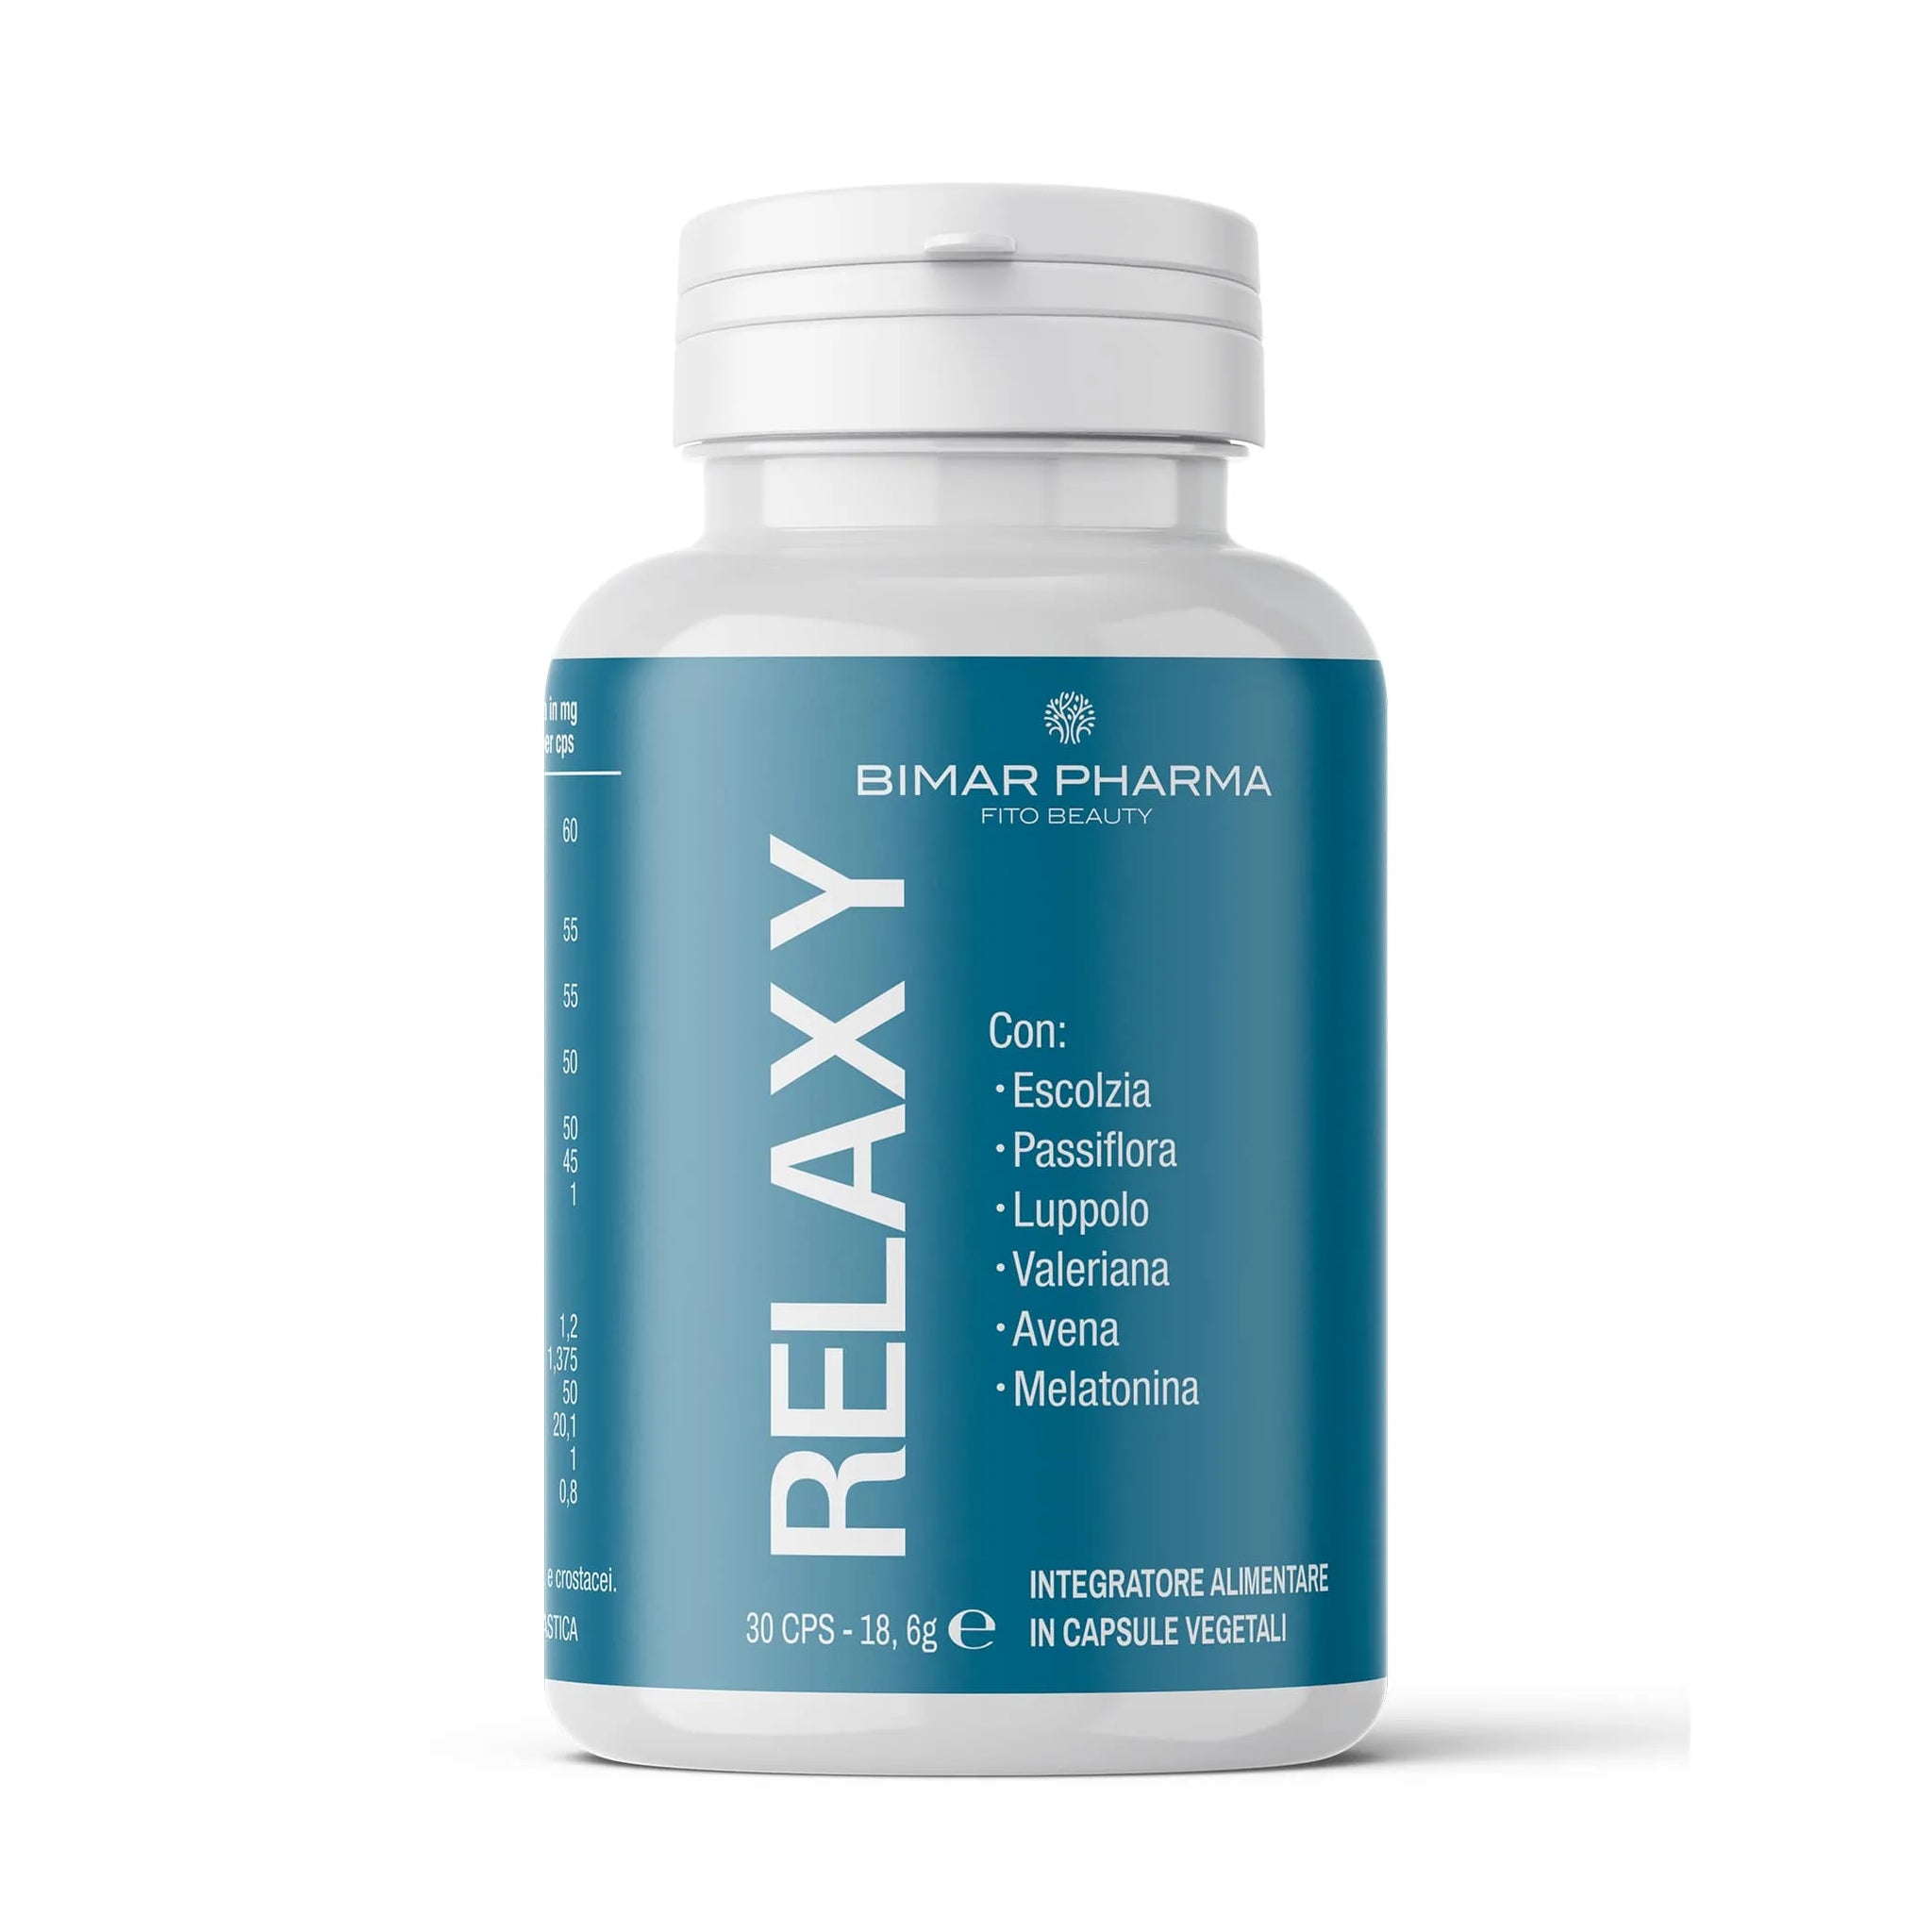 Relaxy - Aiuta il riposo notturno 100% naturale